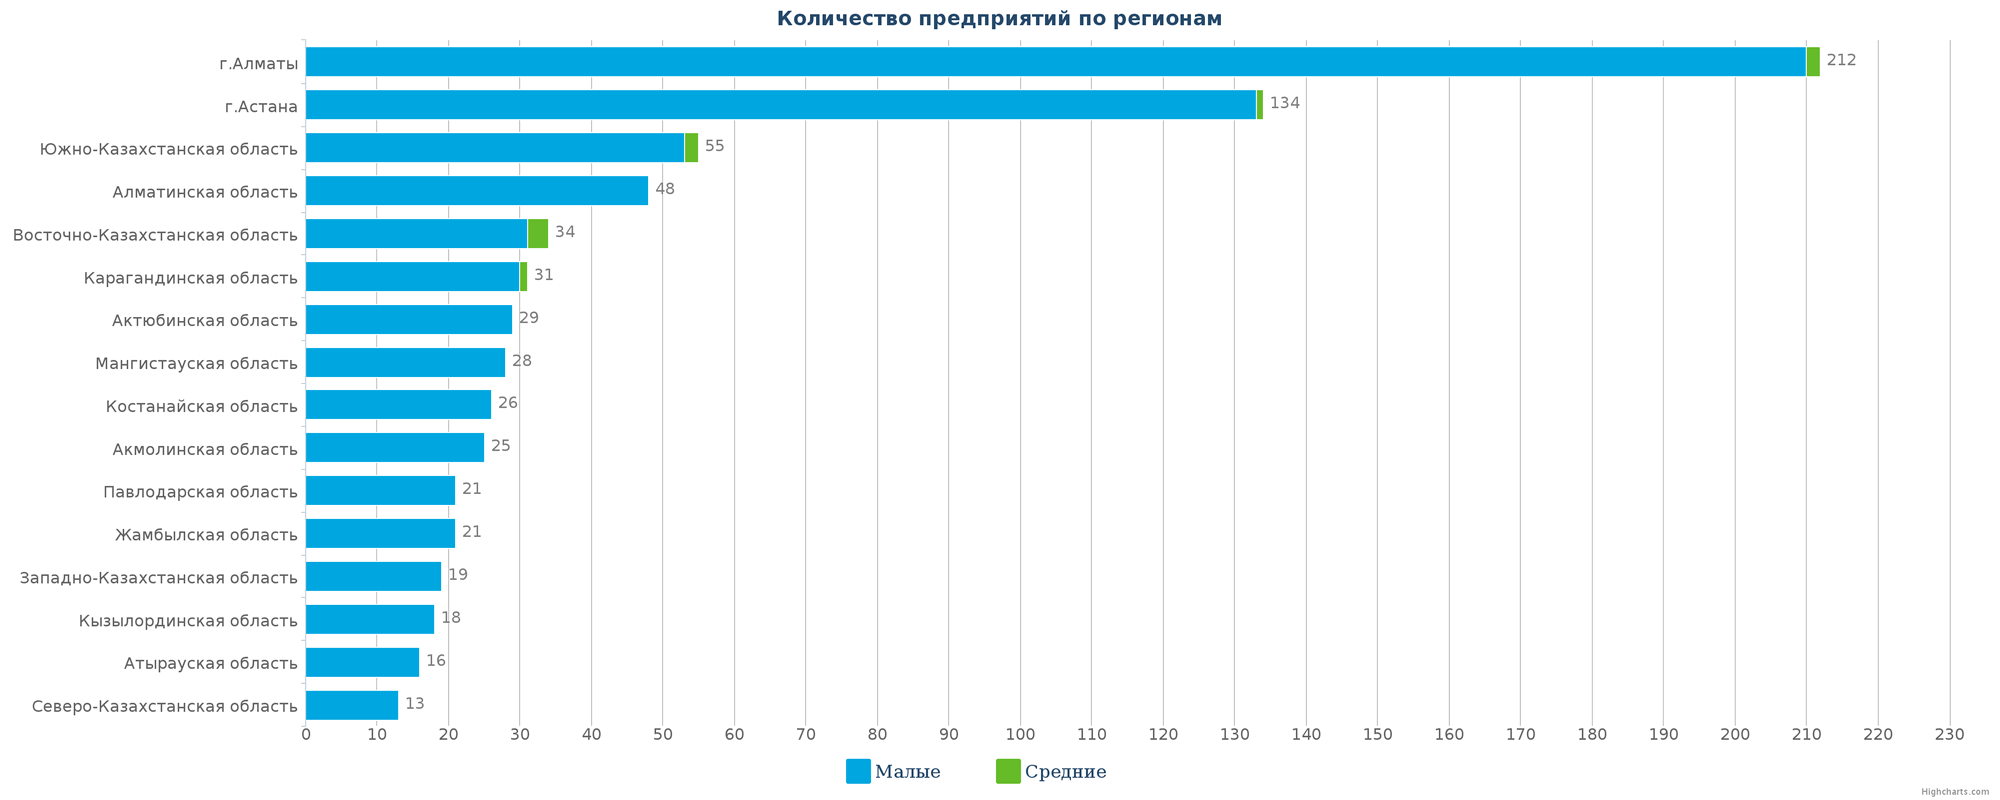 3   Кількість нових підприємств в довіднику по регіонах Казахстану